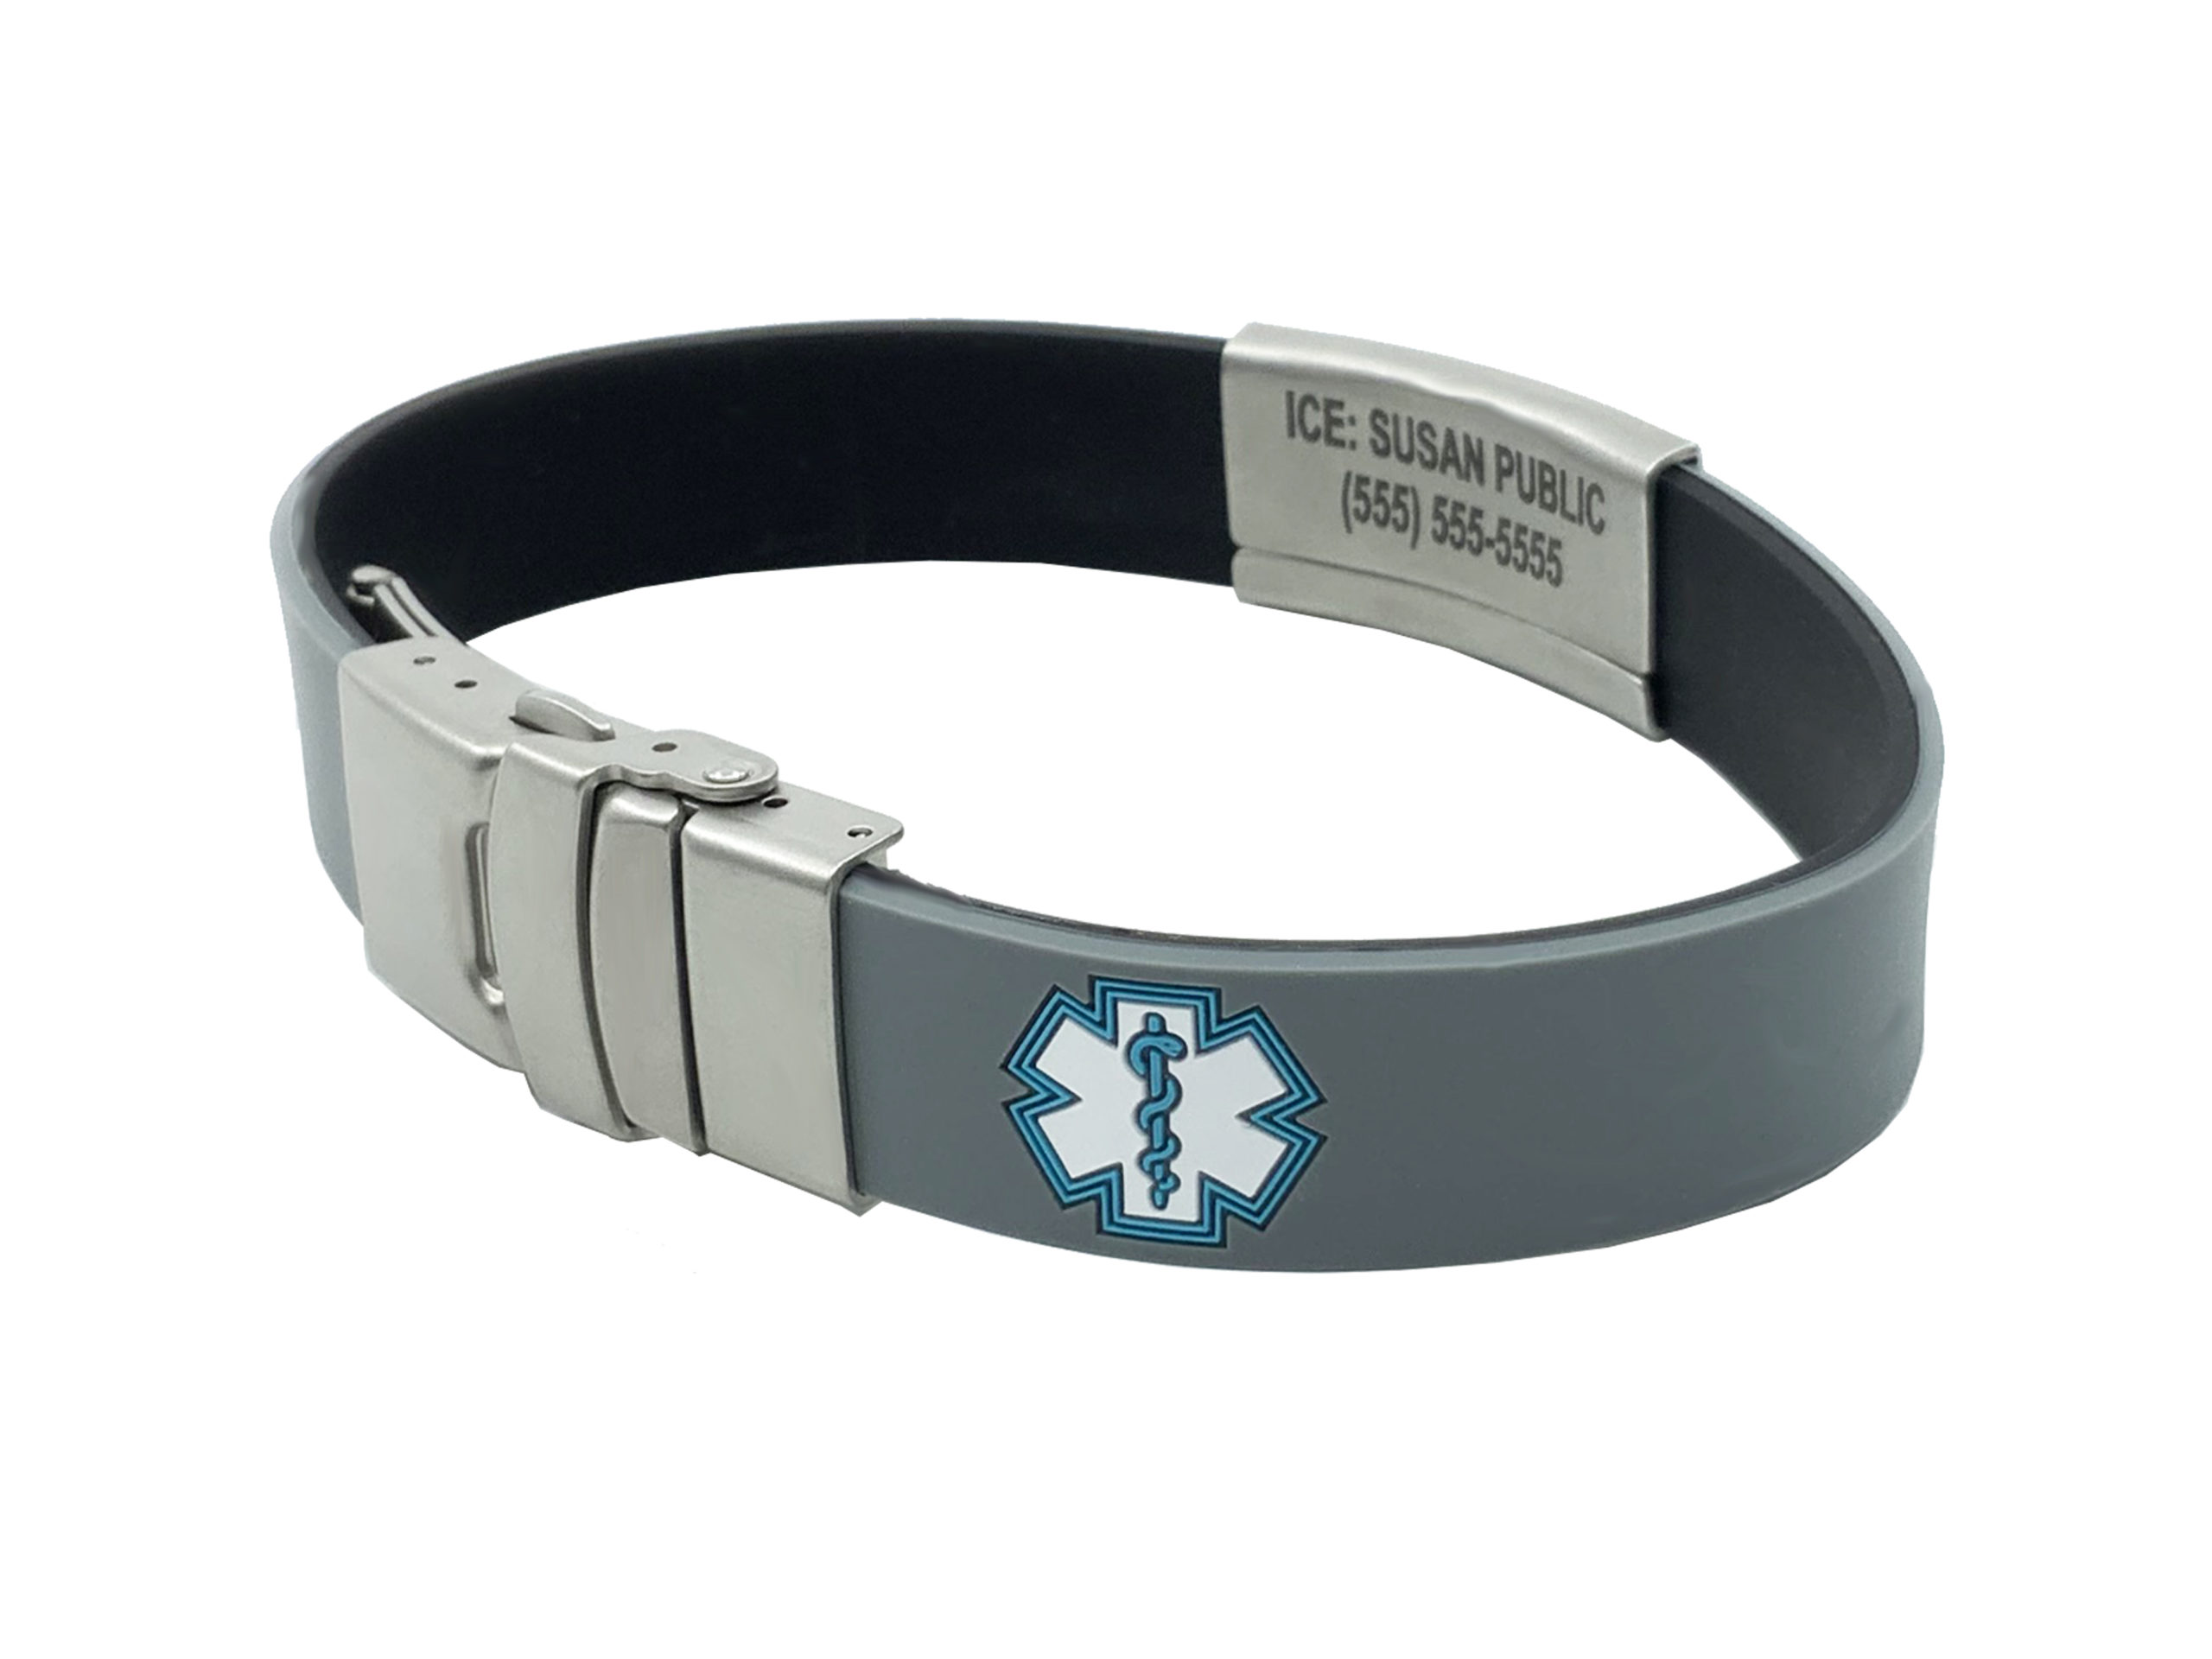 Personalized Bracelet Silicone Medical Bracelet Sport Emergency ID Bracelet for Men Women Kids Free Engraving Waterproof ID Alert Bracelets